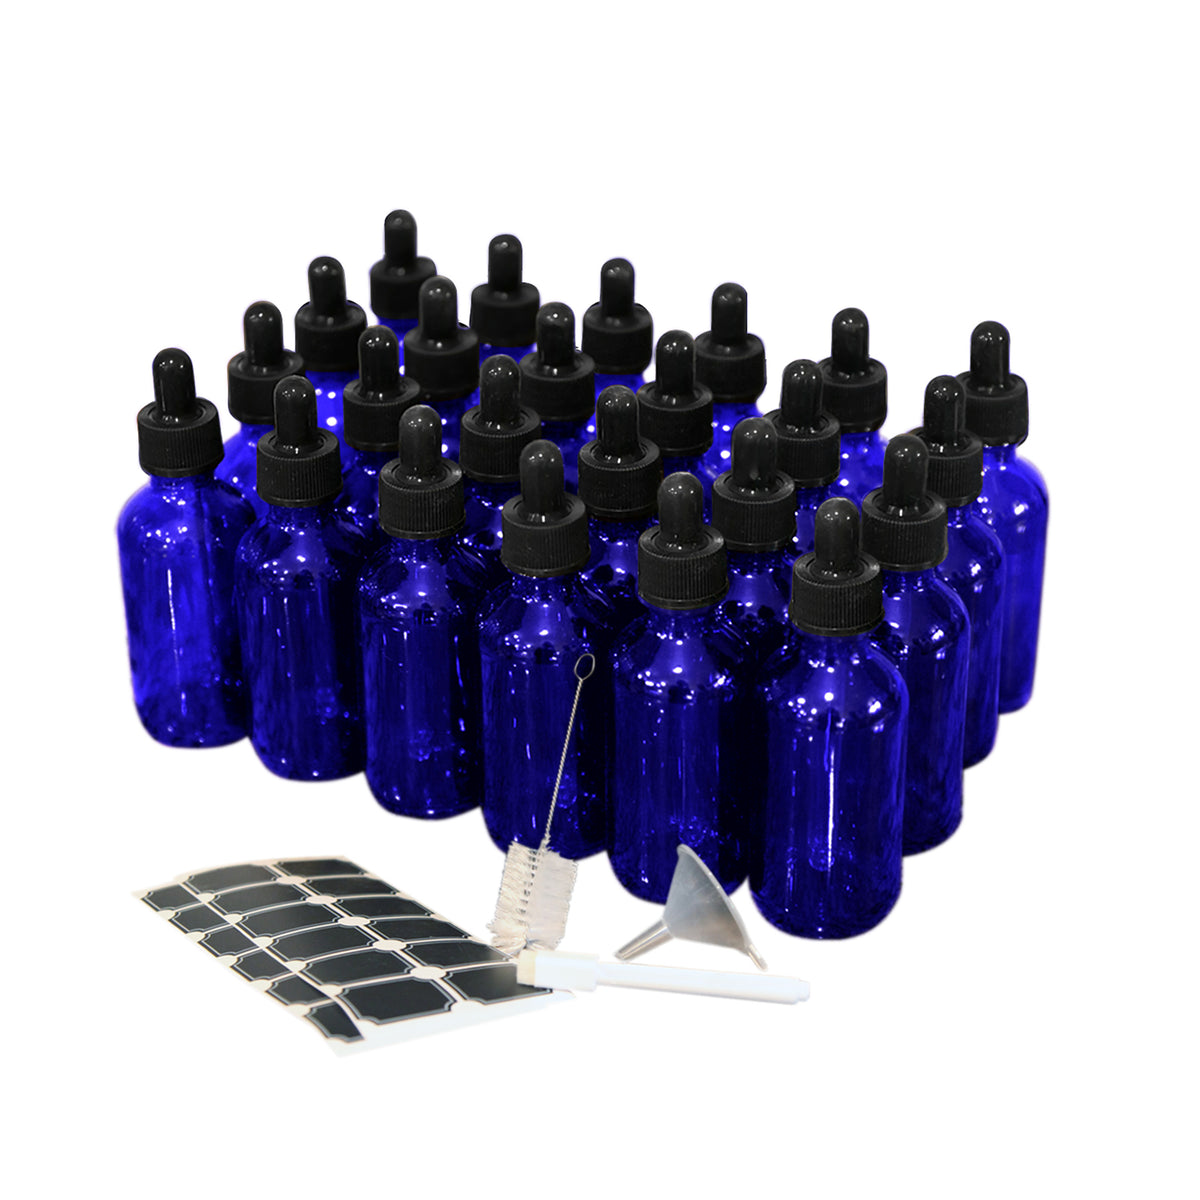 Cobalt Blue Dropper Bottles - 2 Oz.